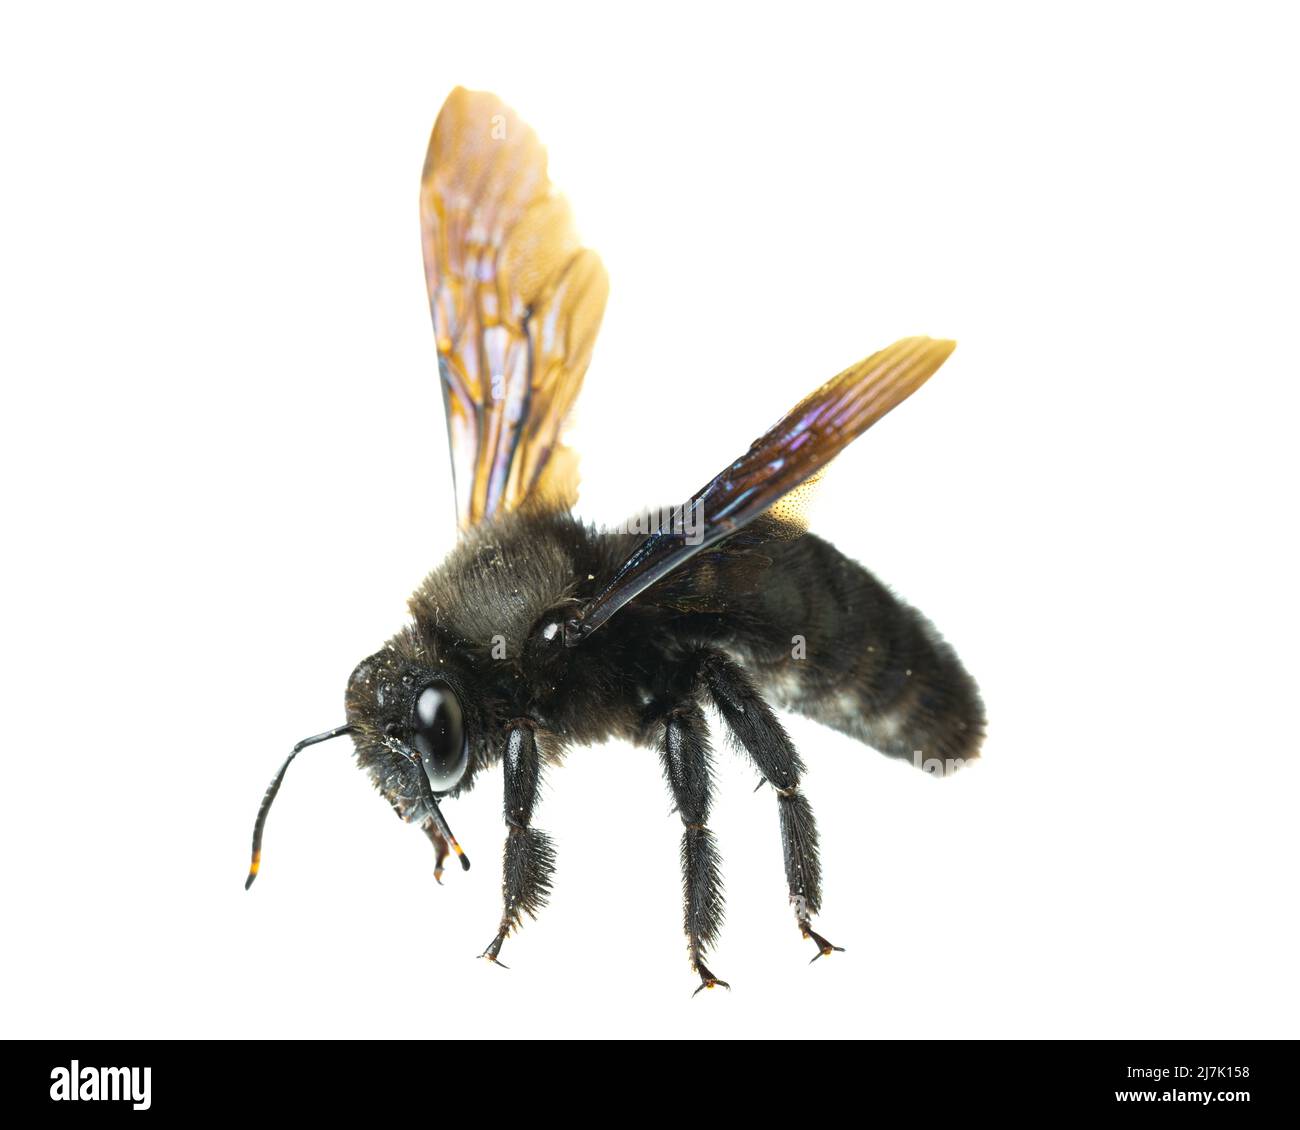 Insectes d'europe - abeilles: Vue latérale détails de l'abeille mâle de carpentier violet (Xylocopa violacea allemand Blauschwarze Holzbiene) isolée sur le backgrou blanc Banque D'Images